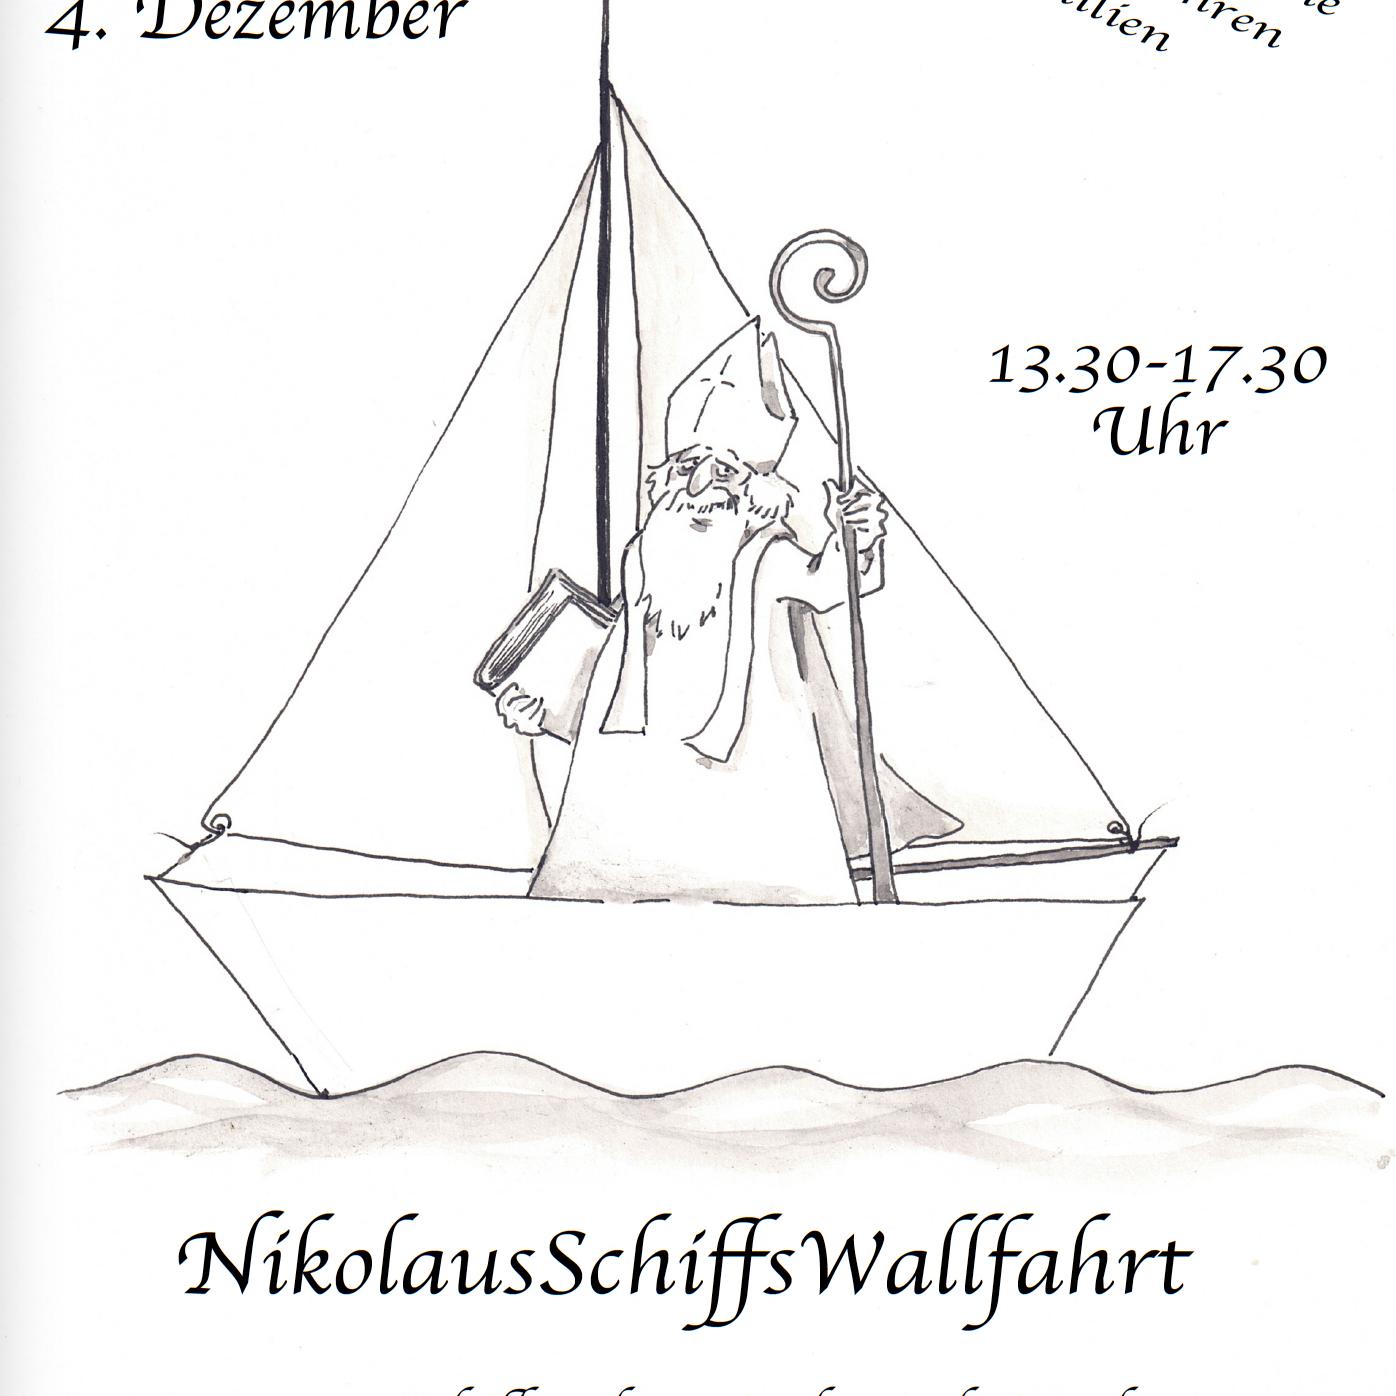 NikolausSchiffsWallfahrt